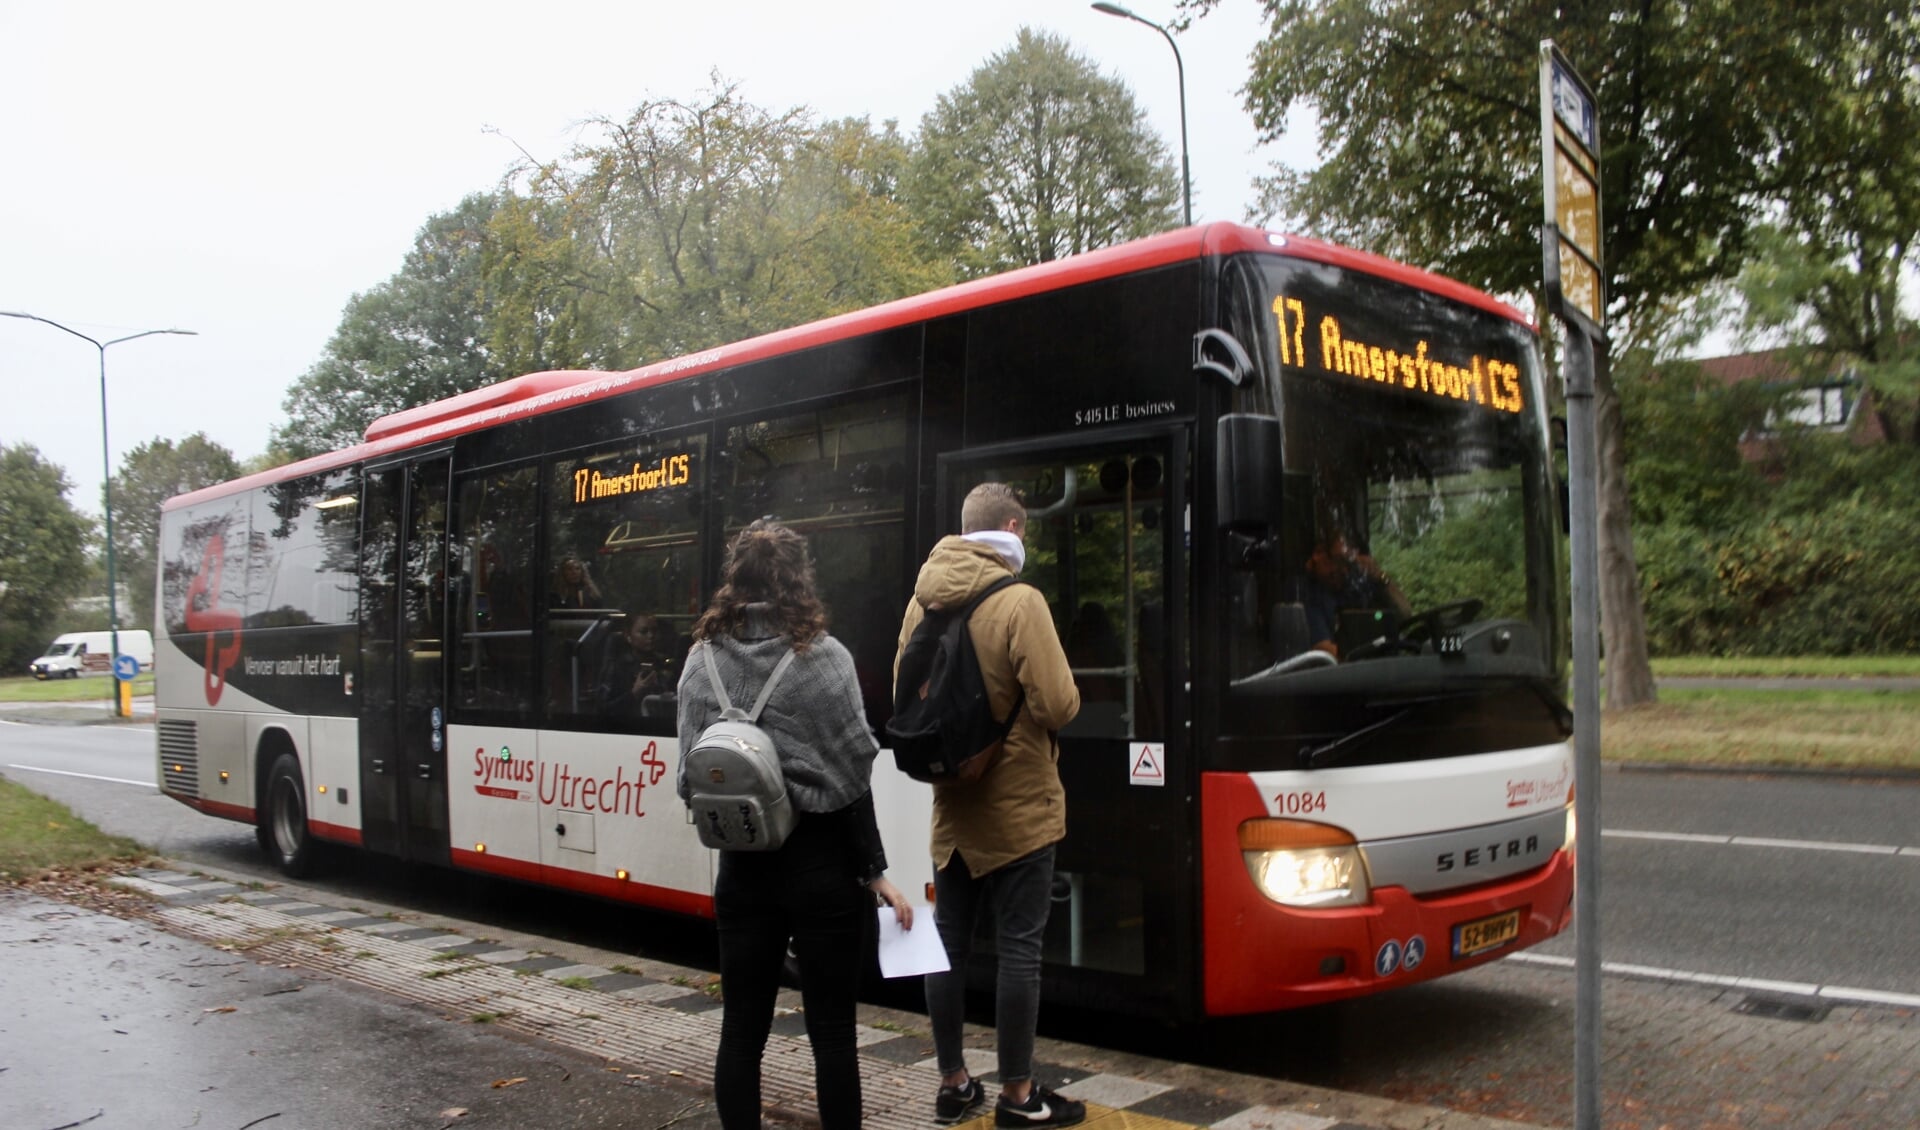 Intrekking Bemiddelen aankleden Tweede reiziger gratis in de bussen van Syntus | Nieuws uit de regio Leusden